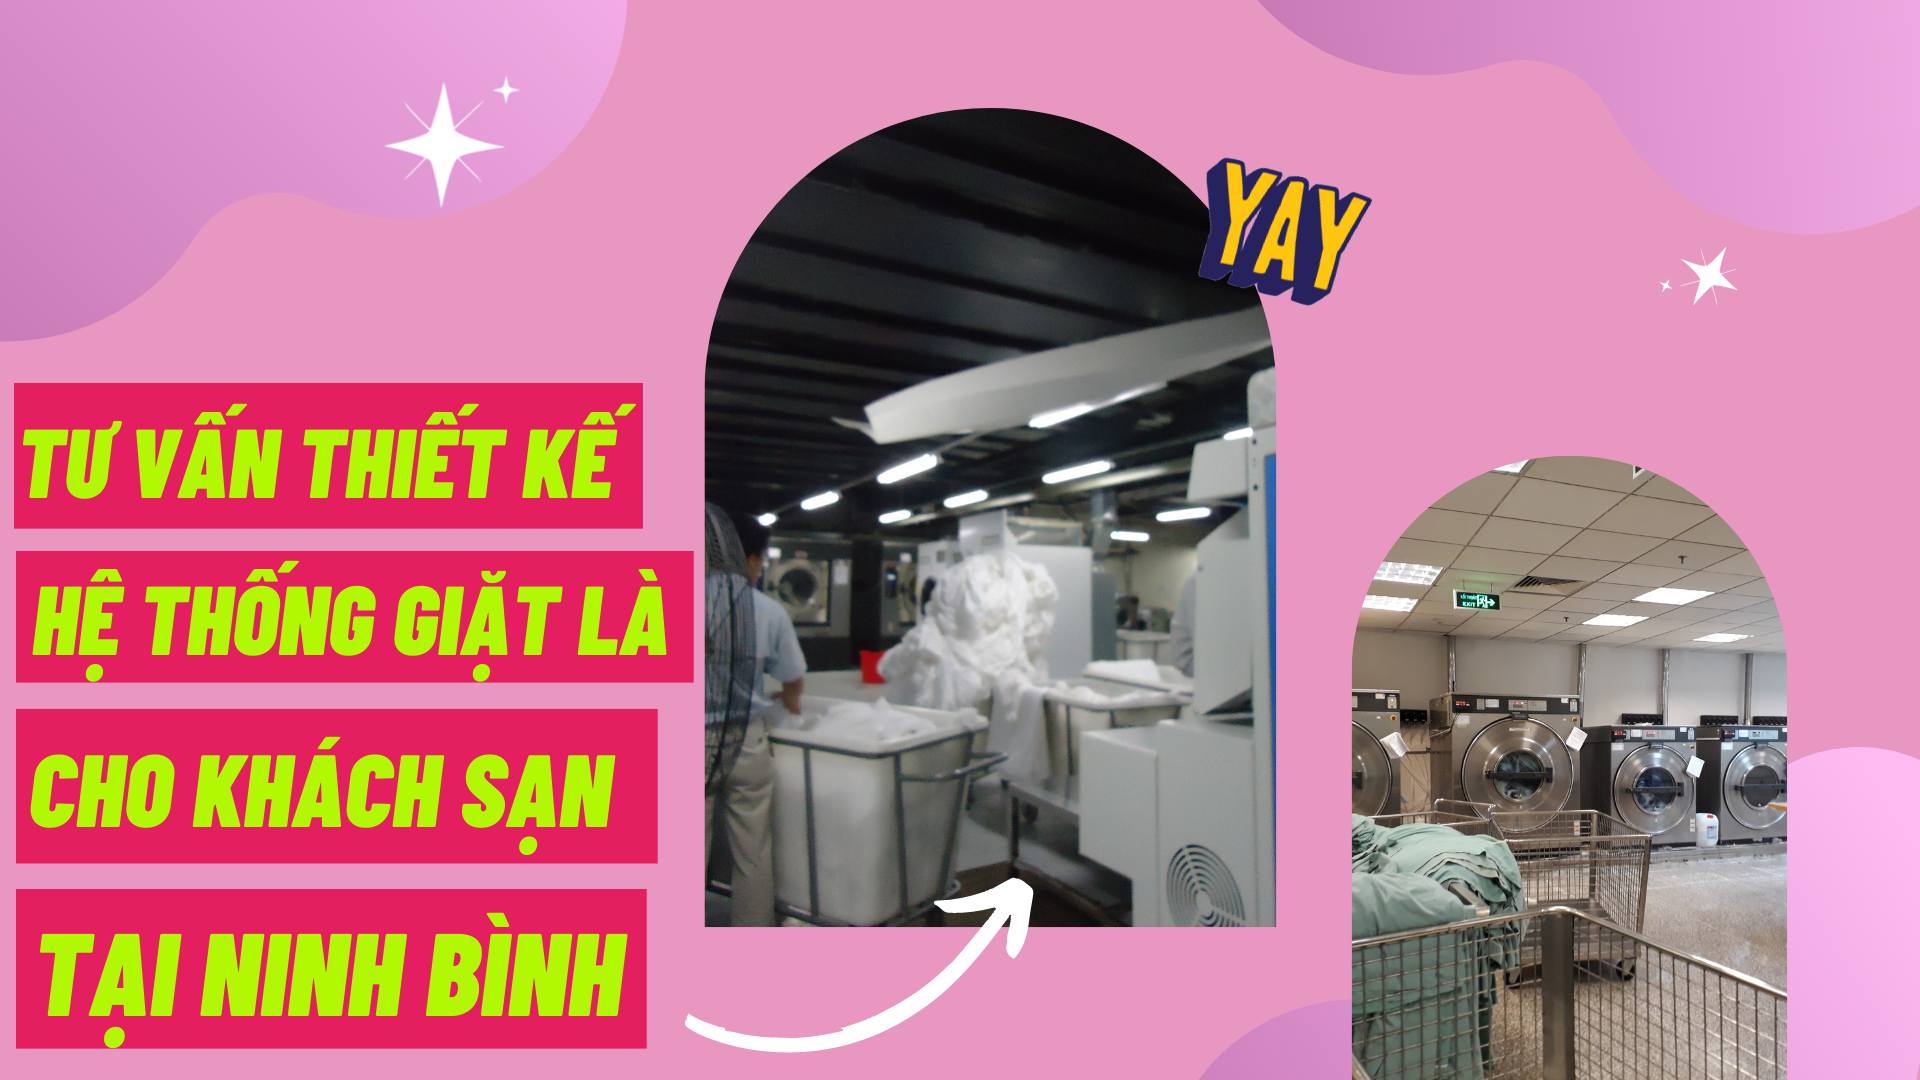 Tư vấn thiết kế hệ thống giặt là cho khách sạn tại Ninh Bình